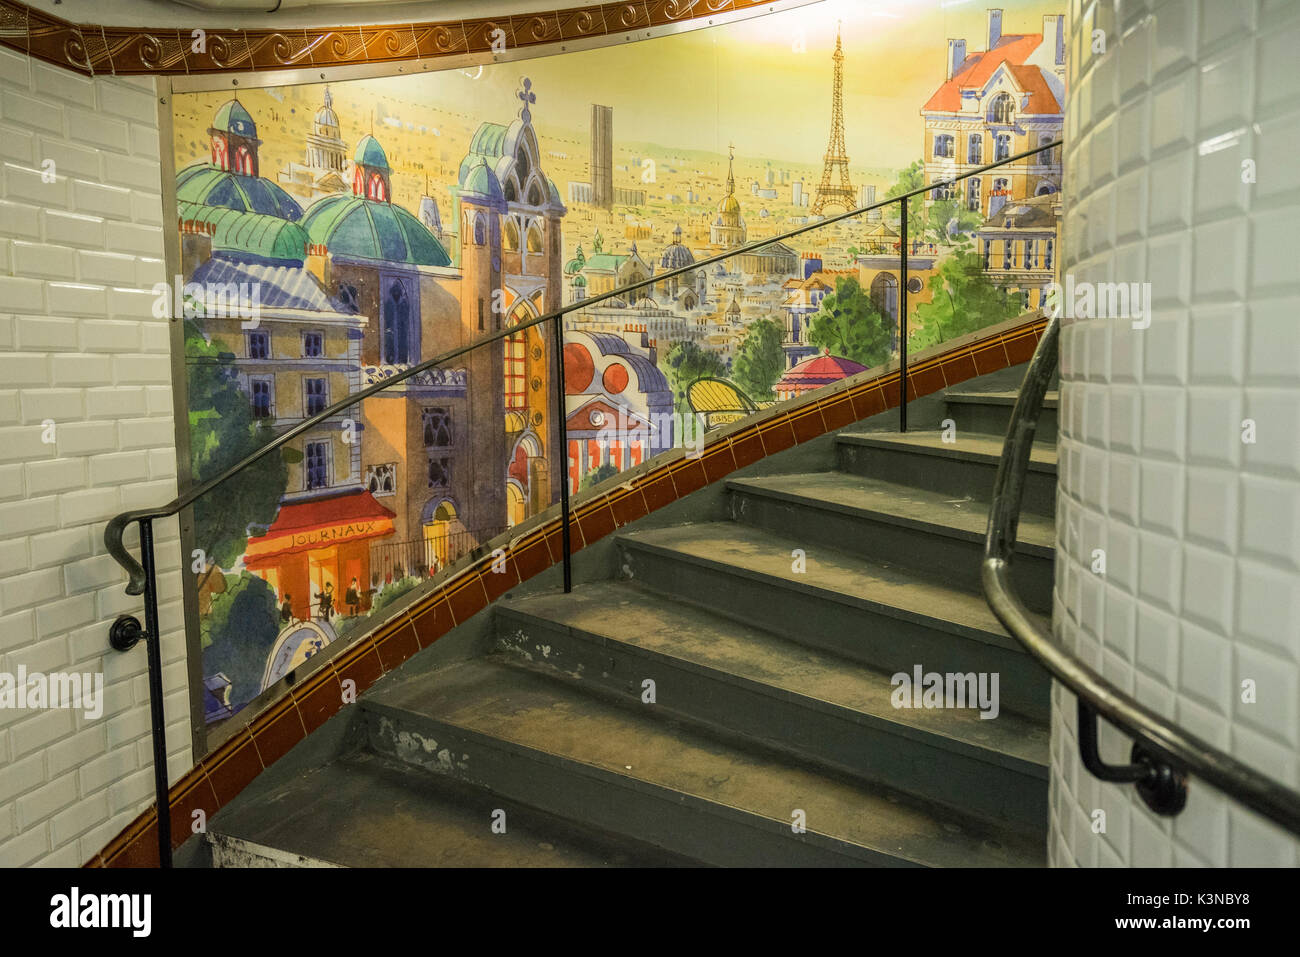 Abbesses: dipinto murale e scala a chiocciola. Stazione Abbesses, Parigi, Francia Foto Stock